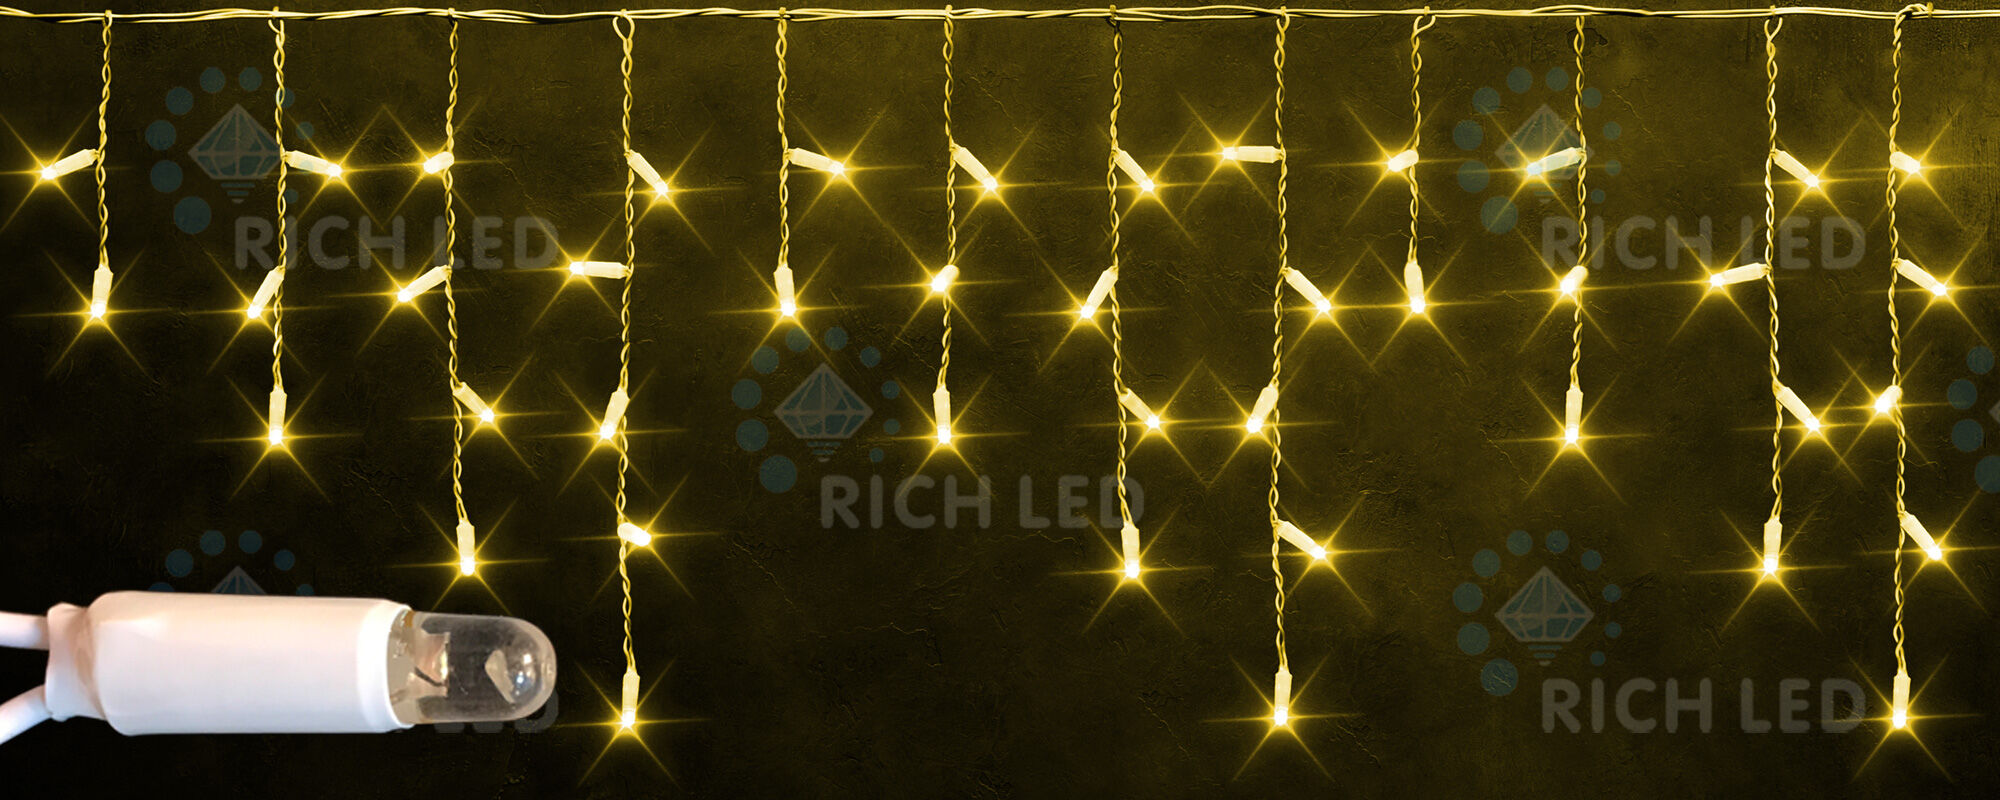 Светодиодная бахрома Rich LED, 3*0.5 м, желтая, белый резиновый провод, RICH LED